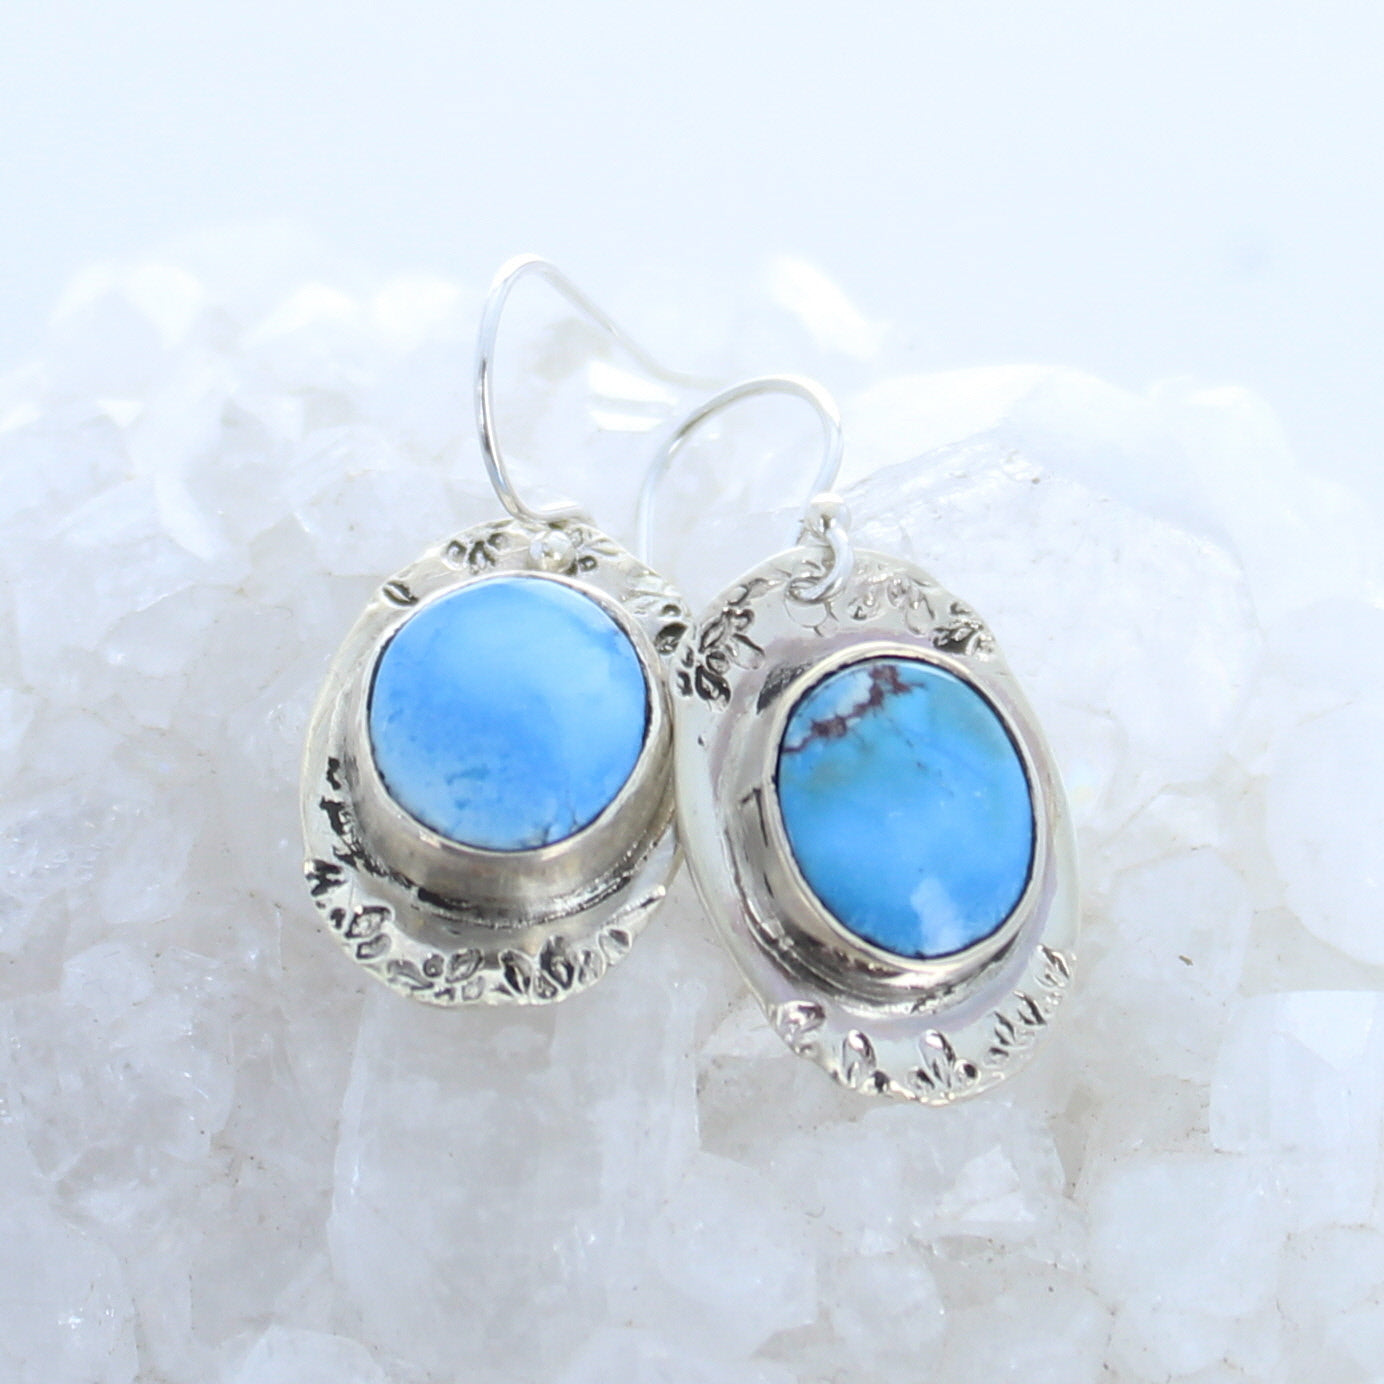 Kazakhstan Turquoise Earrings Sterling Silver Oval Drops -NewWorldGems